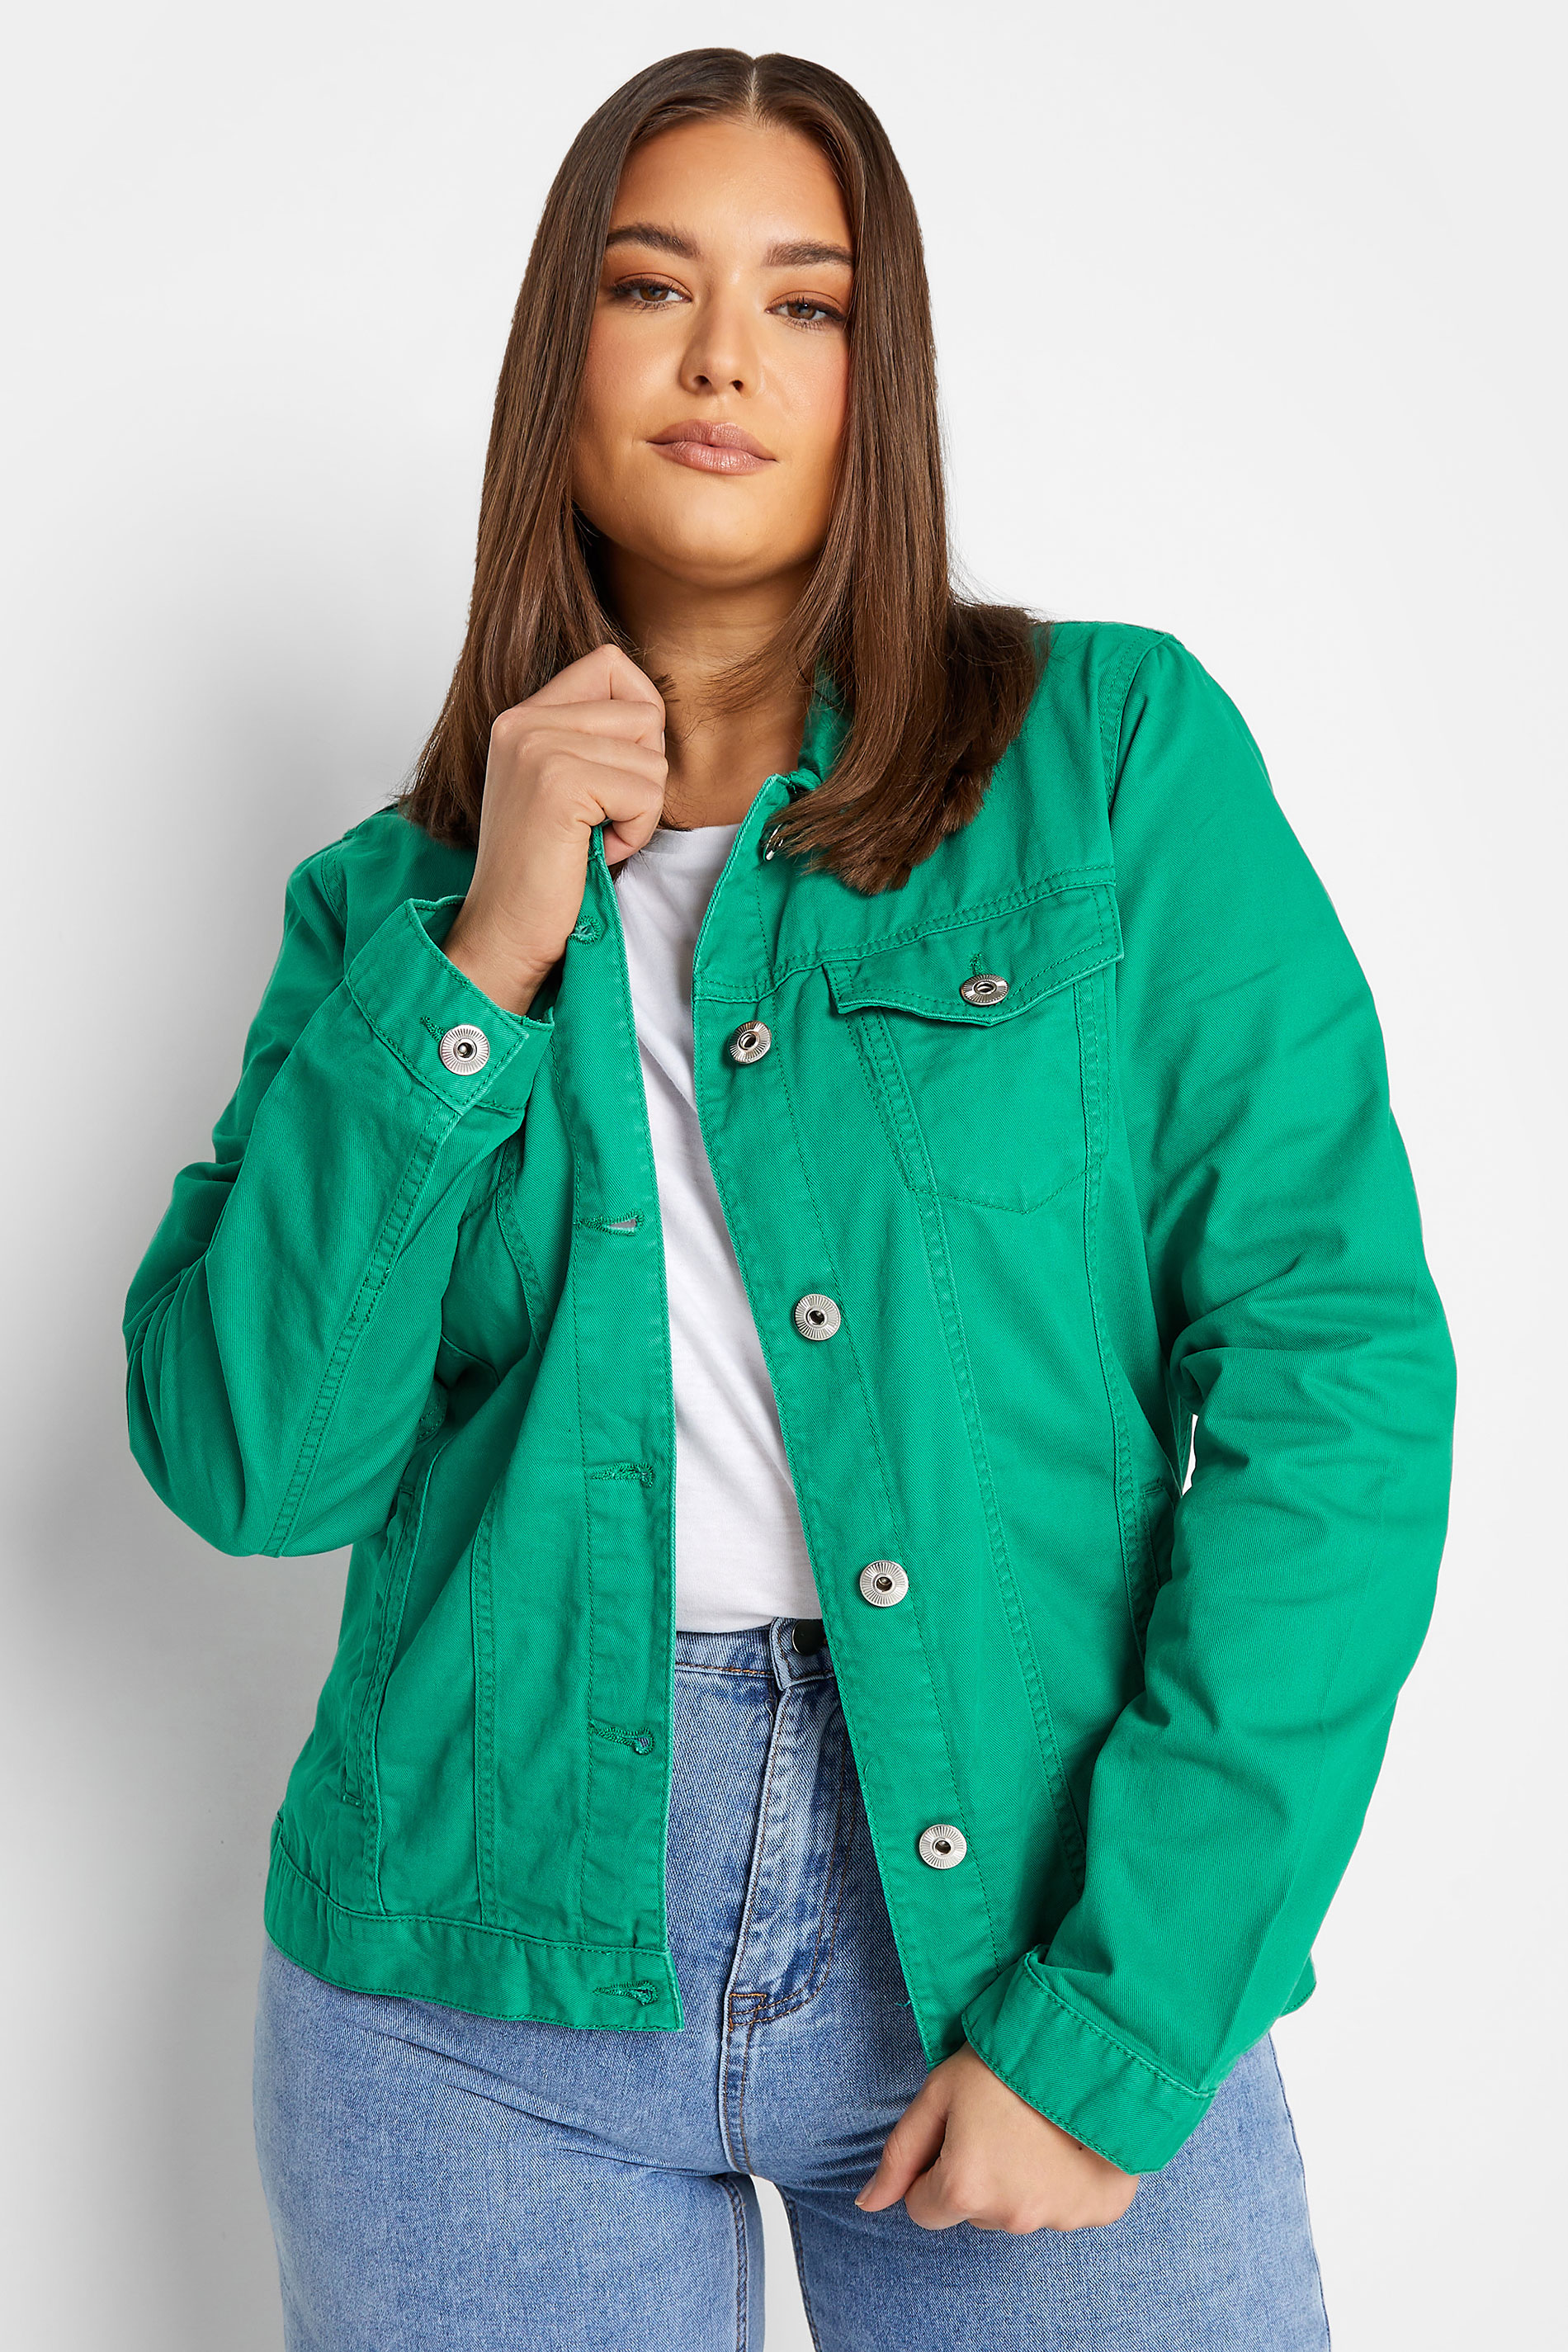 LTS Tall Women's Green Denim Jacket | Long Tall Sally 1